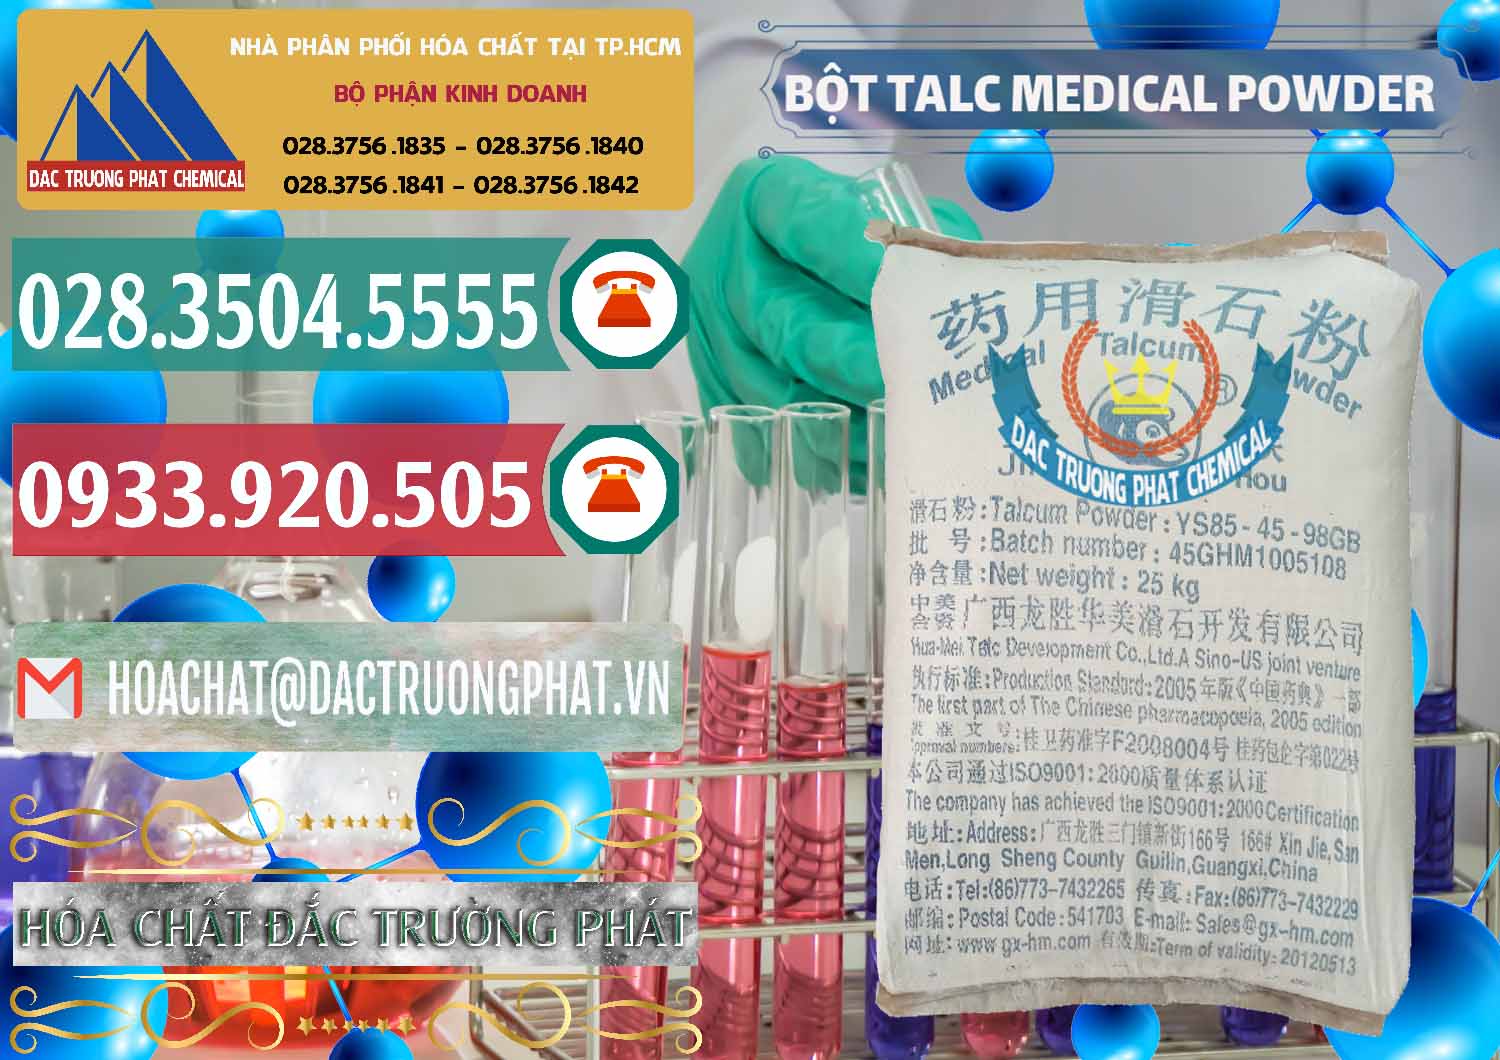 Cty bán & cung ứng Bột Talc Medical Powder Trung Quốc China - 0036 - Cty chuyên cung cấp _ kinh doanh hóa chất tại TP.HCM - muabanhoachat.vn